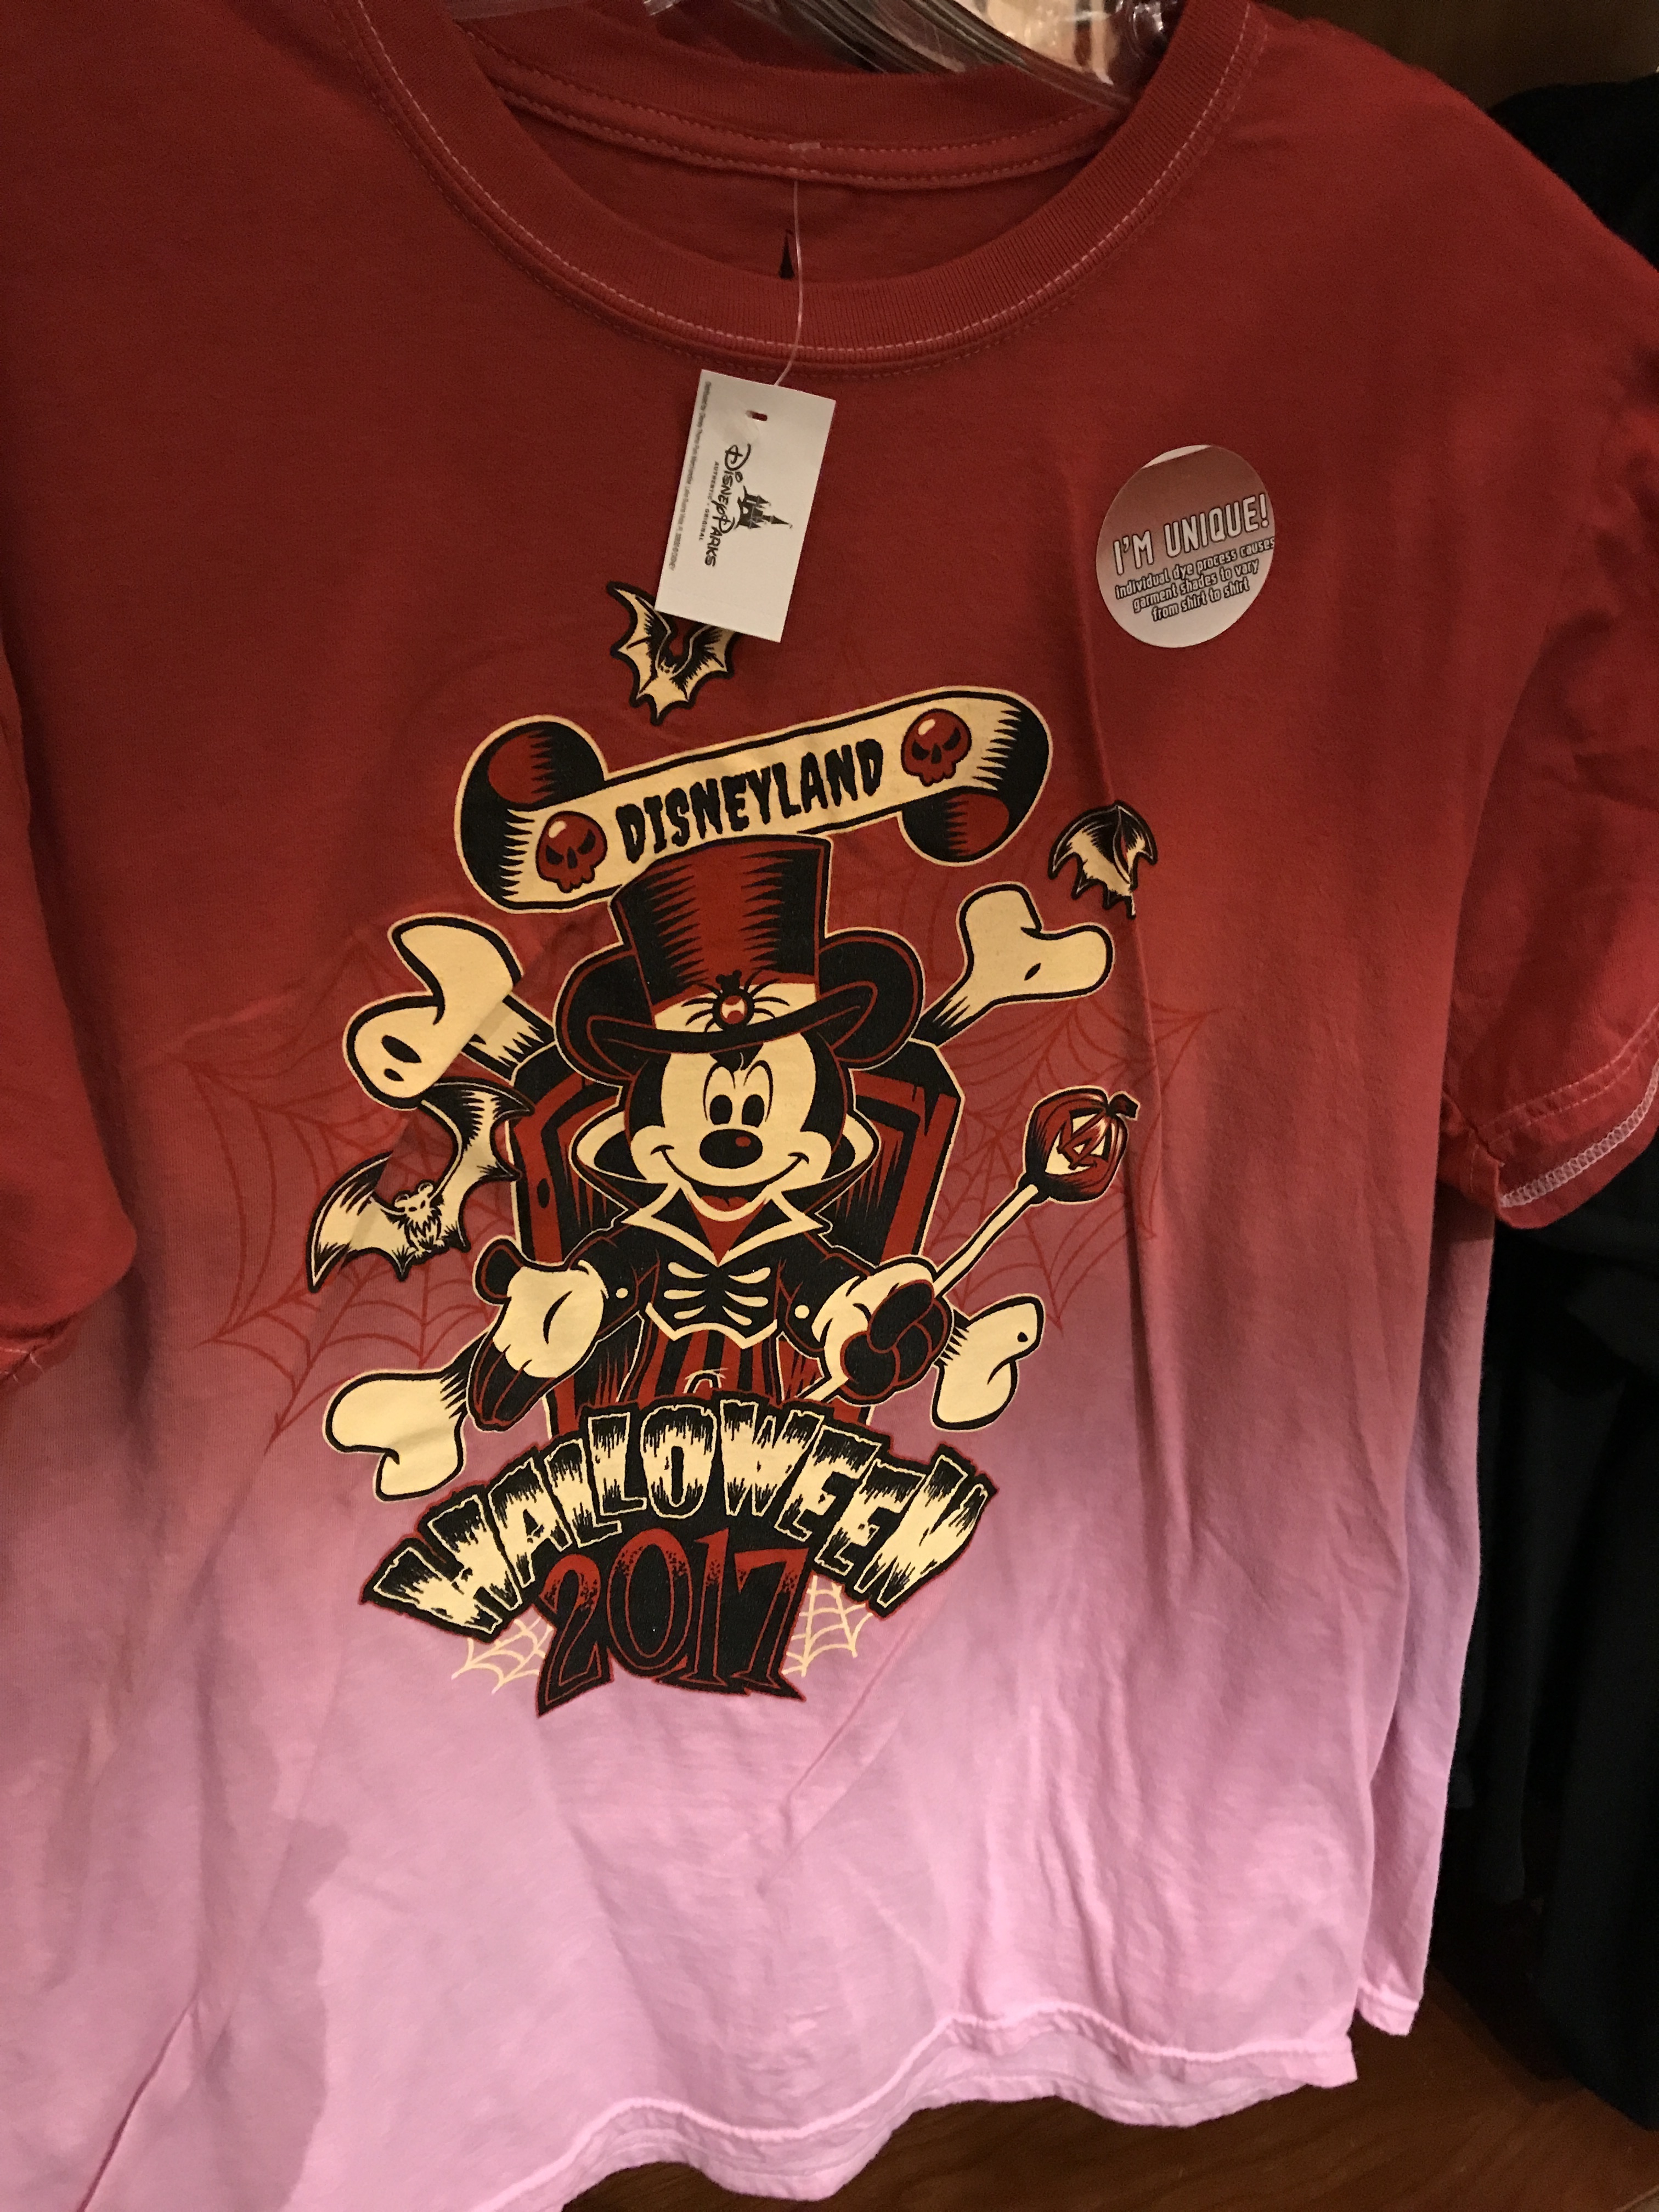 Disneyland Merchandise Update: Halloween Items Arrive for 2017